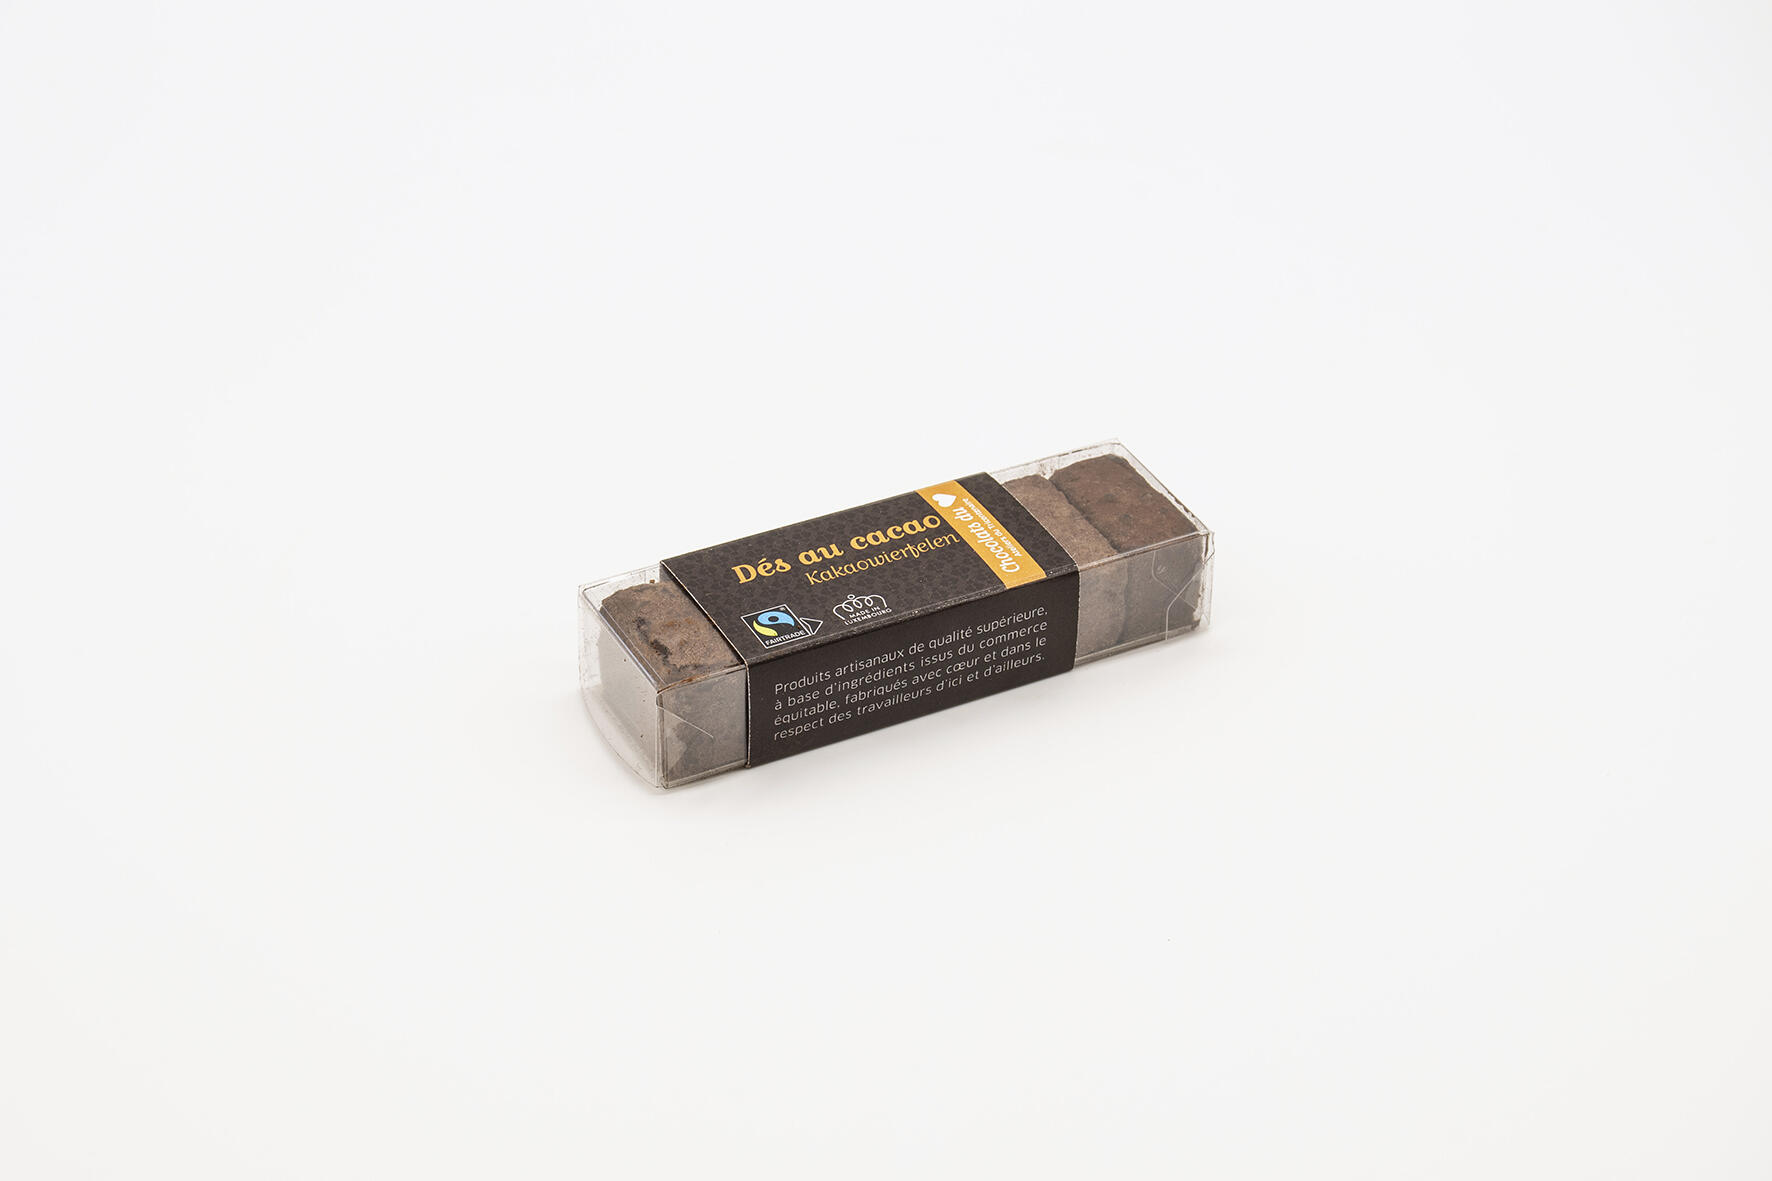 Ballotin trans. dices with cocoa (50g) Fairtrade 50g